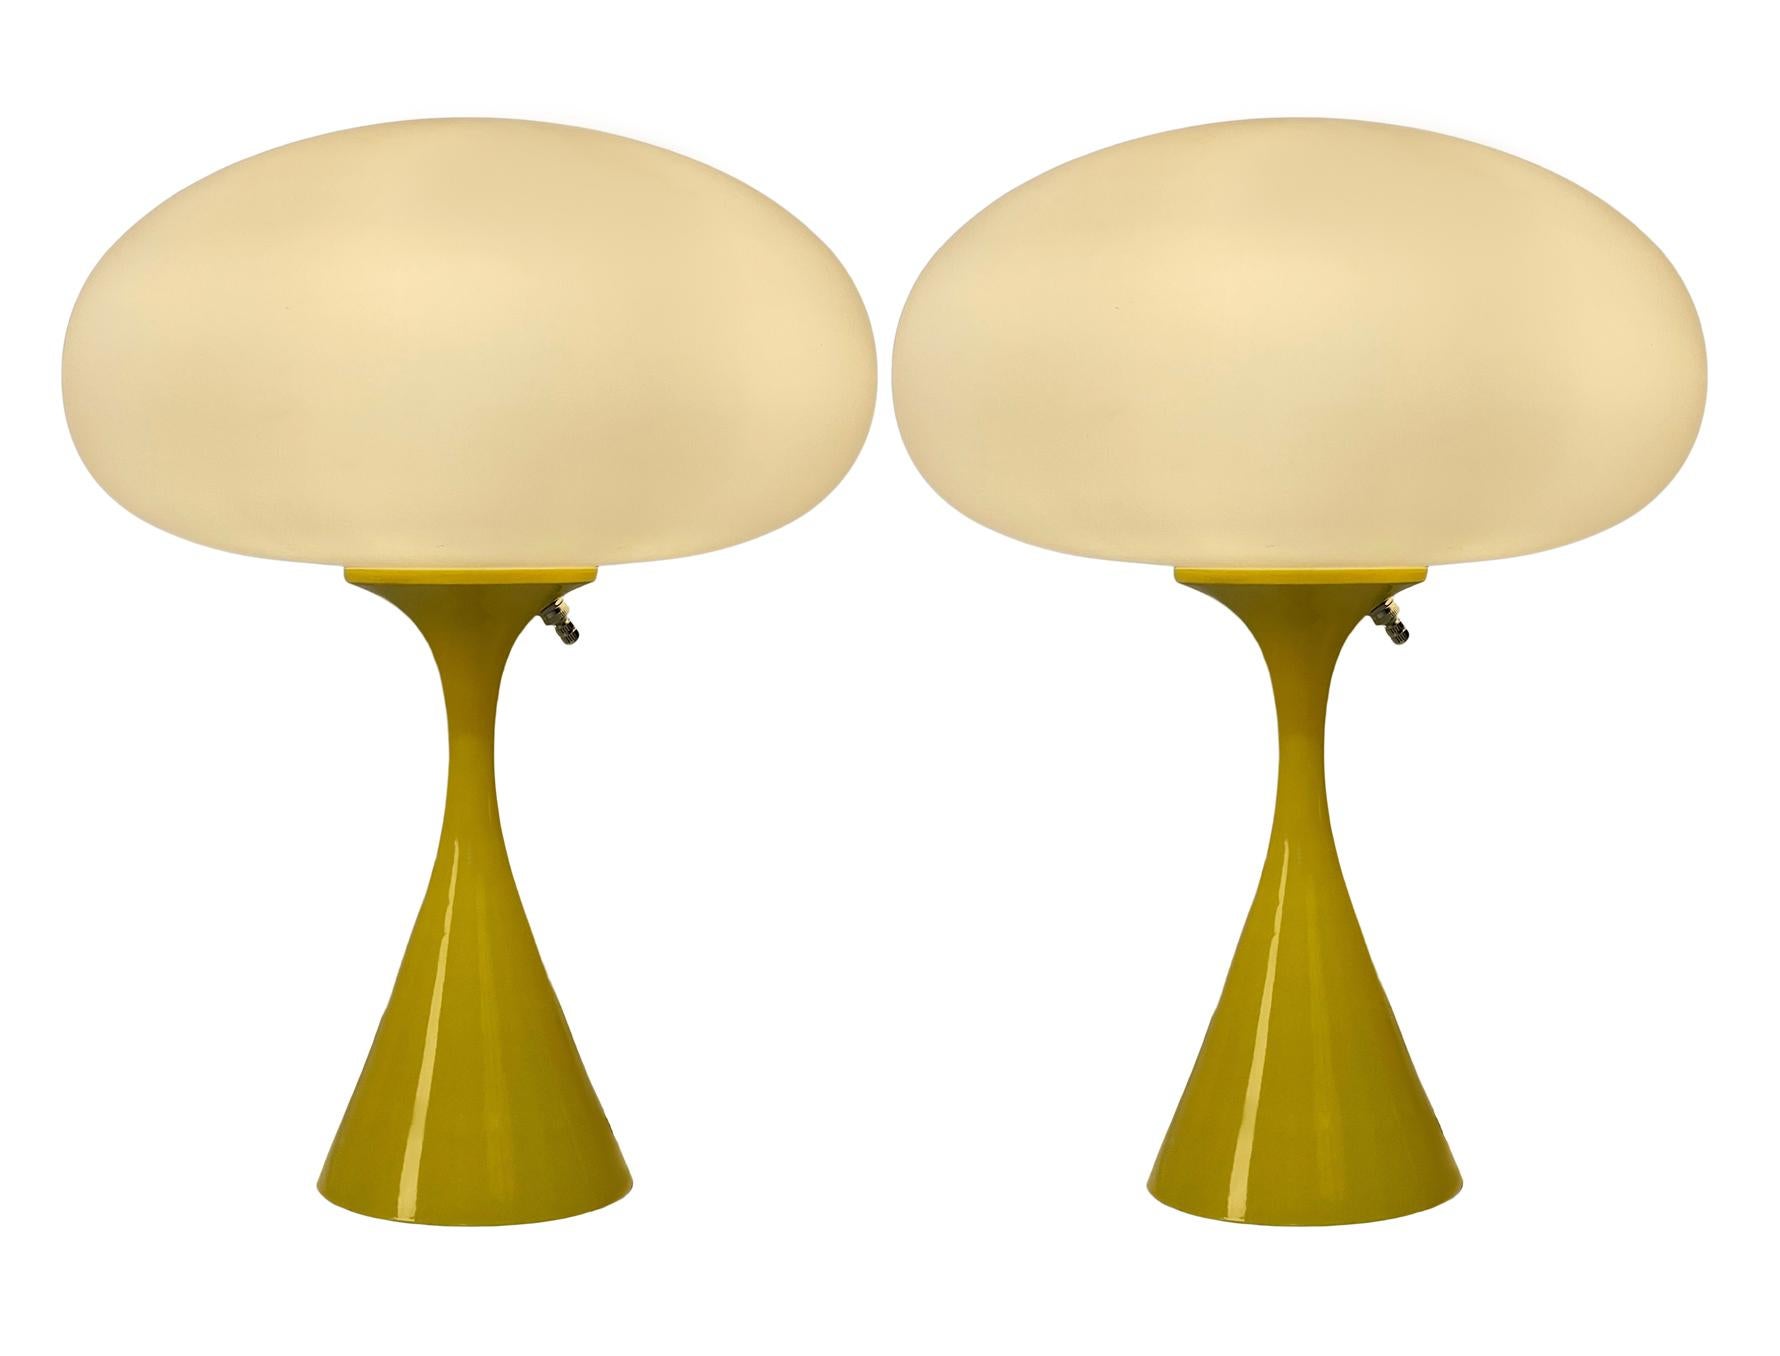 Une belle paire de lampes de table assorties en forme de champignon conique d'après Laurel Lamp Company. La lampe comporte une base en aluminium moulé avec un revêtement en poudre jaune et un abat-jour en verre dépoli soufflé à la bouche. Le prix